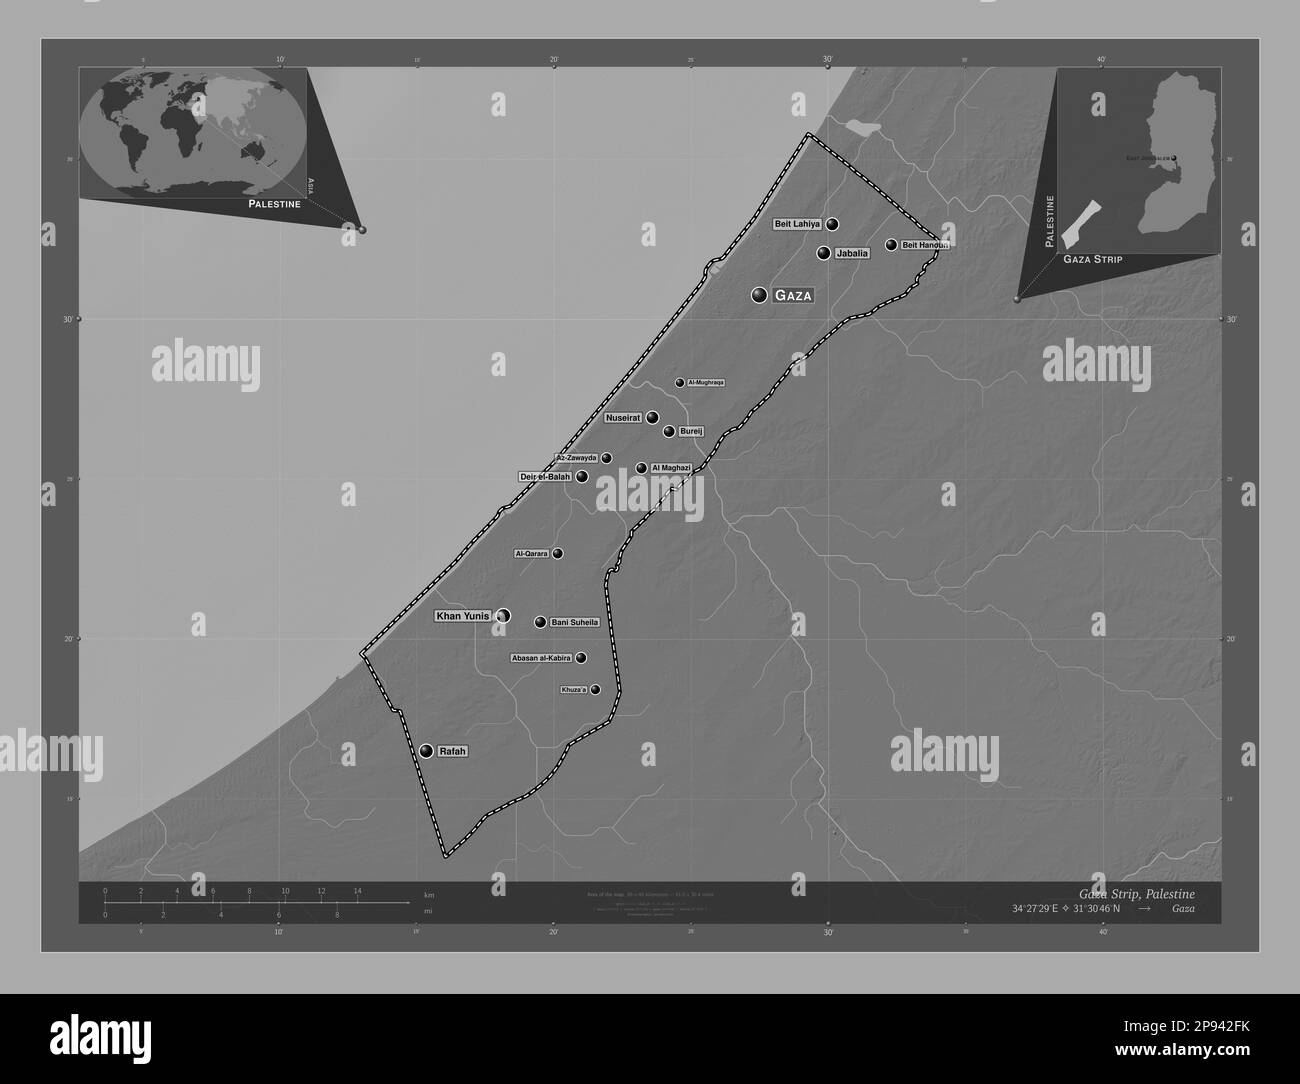 Striscia di Gaza, regione della Palestina. Mappa altimetrica bilivello con laghi e fiumi. Località e nomi delle principali città della regione. Posizione ausiliaria d'angolo Foto Stock